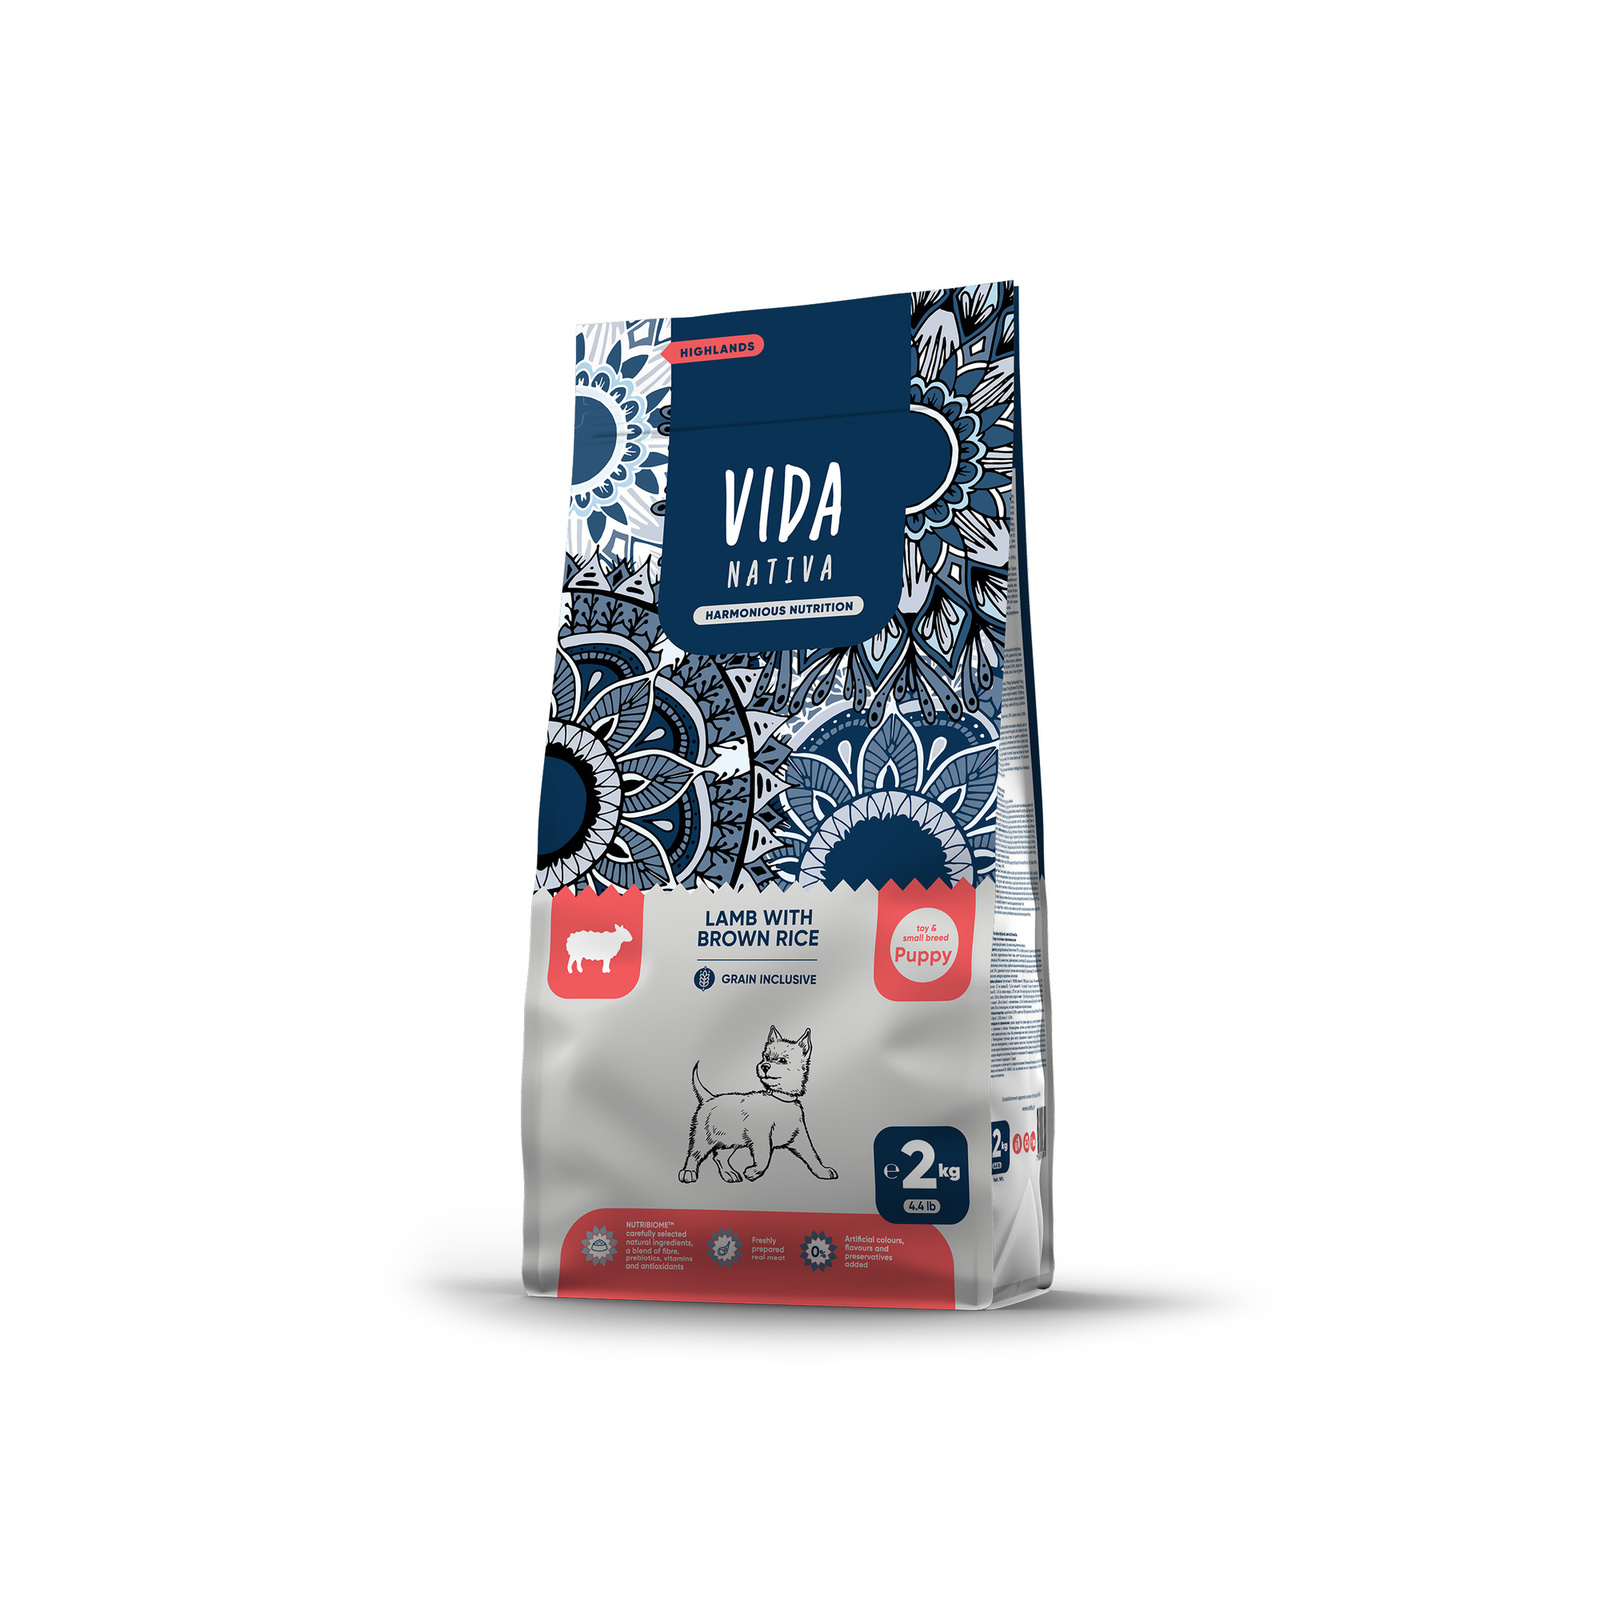 VIDA Nativa корм для щенков мелких пород с ягненком и бурым рисом (2 кг)